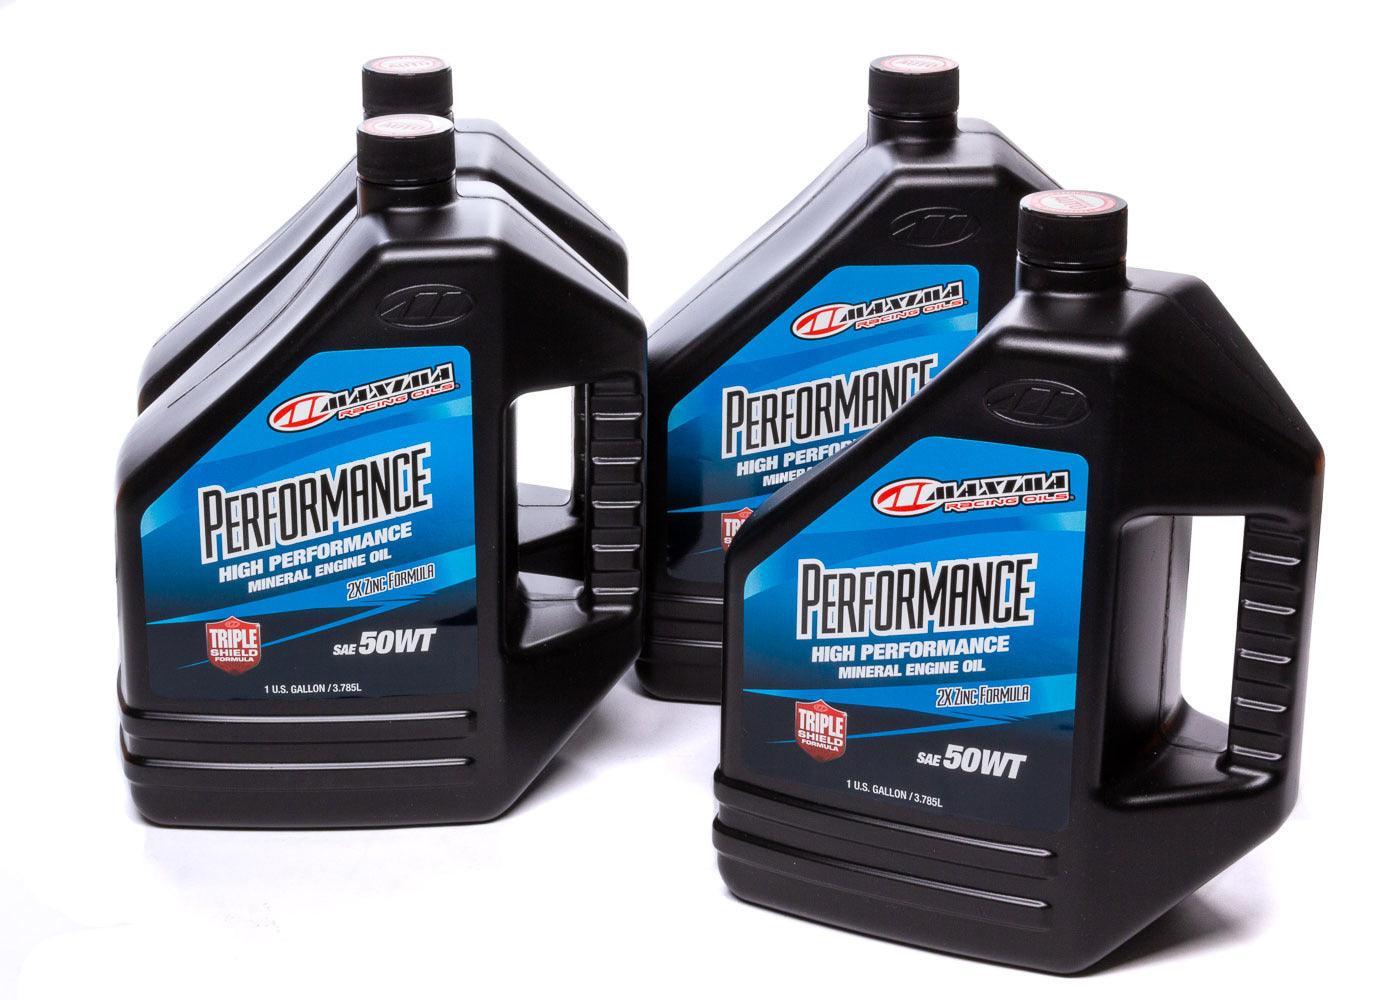 50w Petroleum Oil Case 4 x 1 Gallon - Burlile Performance Products